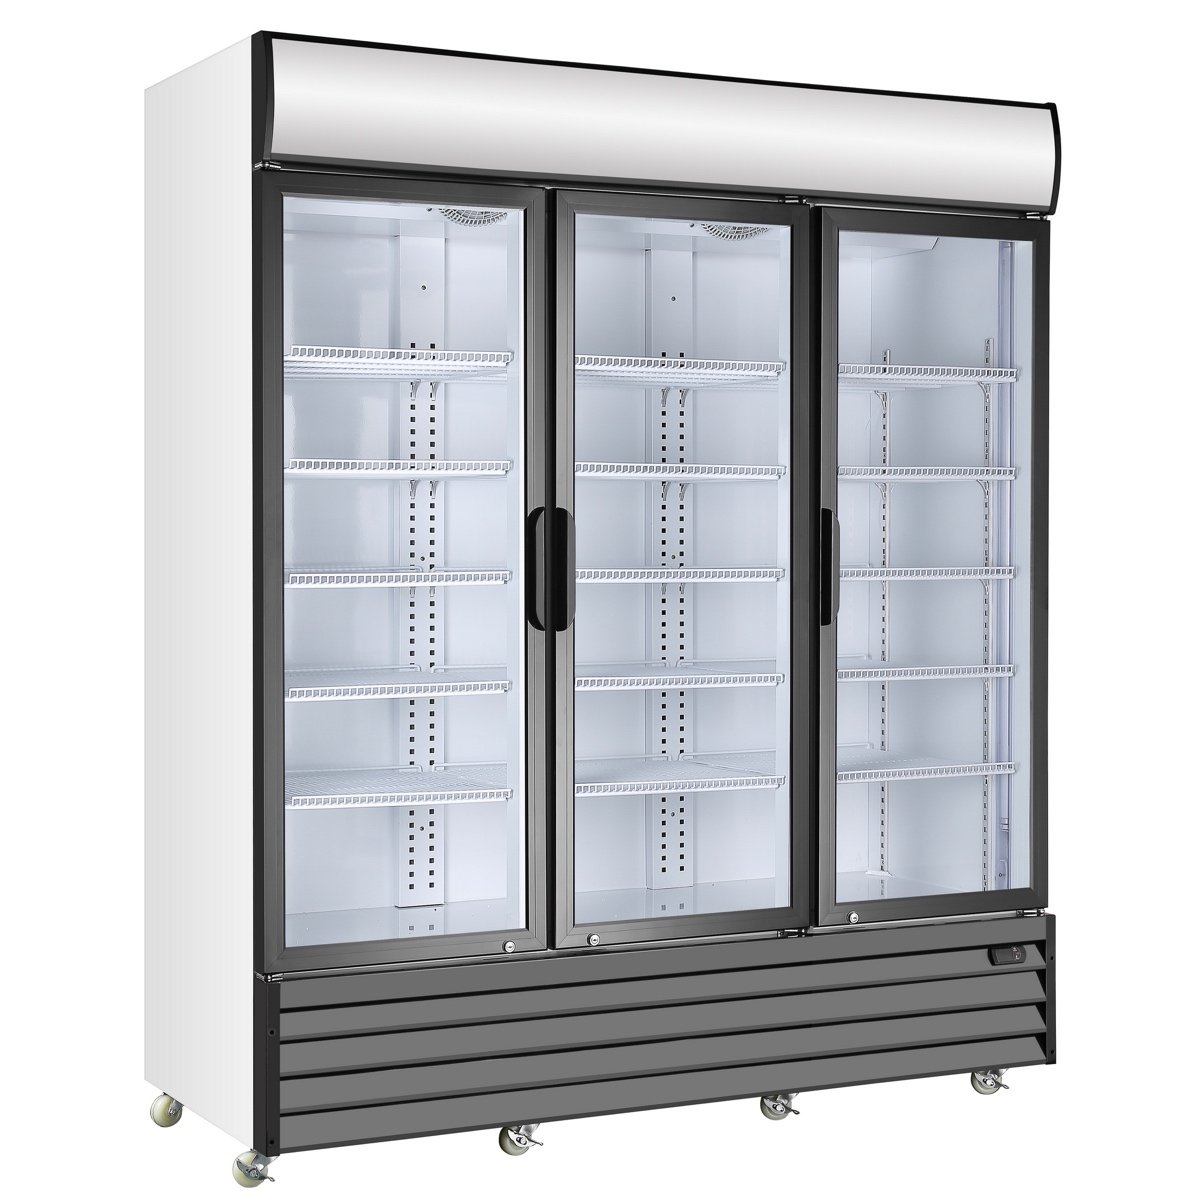 KingsBottle G1500 3-Door Display Beverage Cooler Commercial Refrigerator